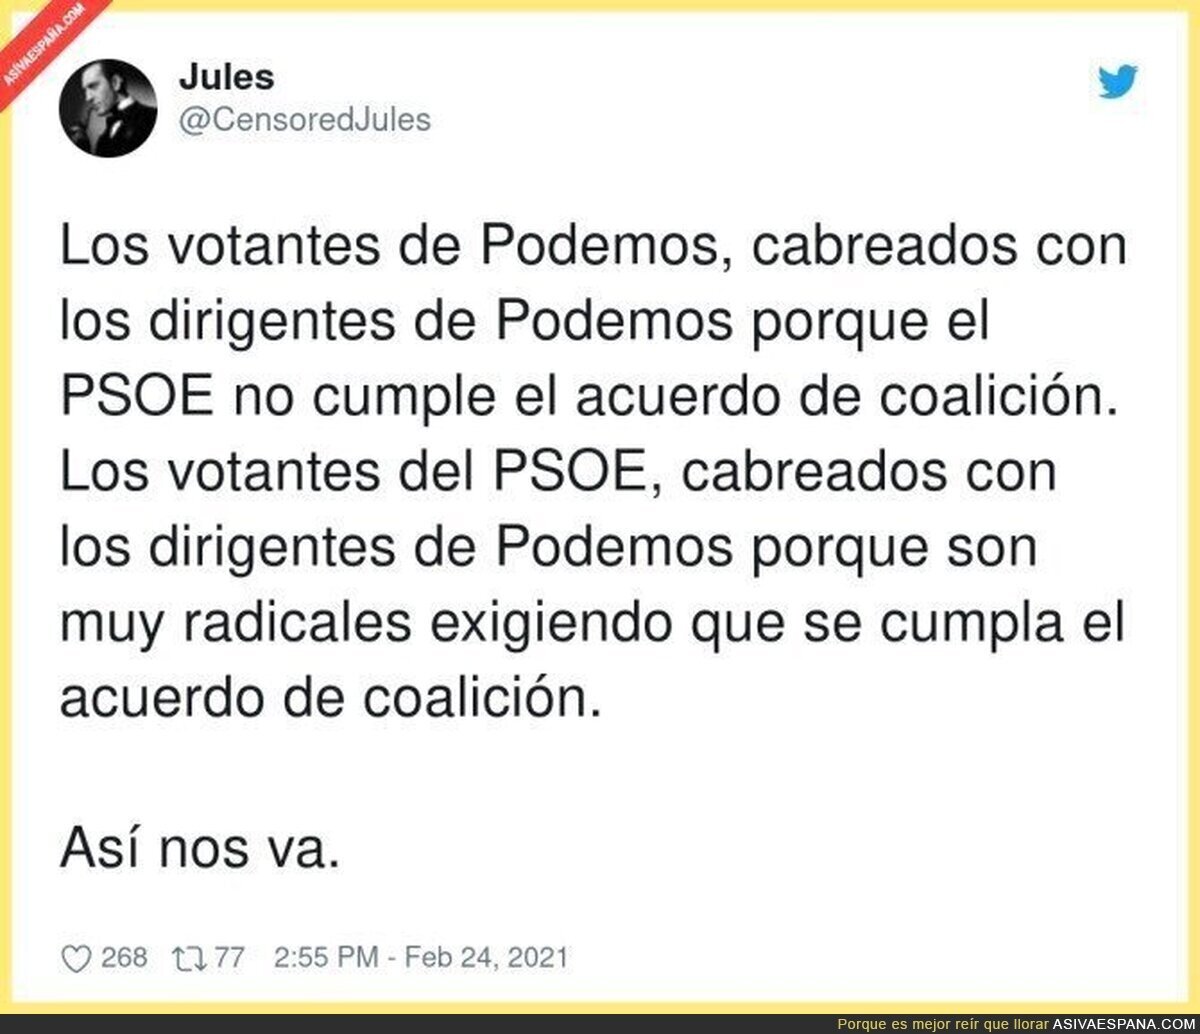 Las miradas deben ir para los del PSOE sin duda